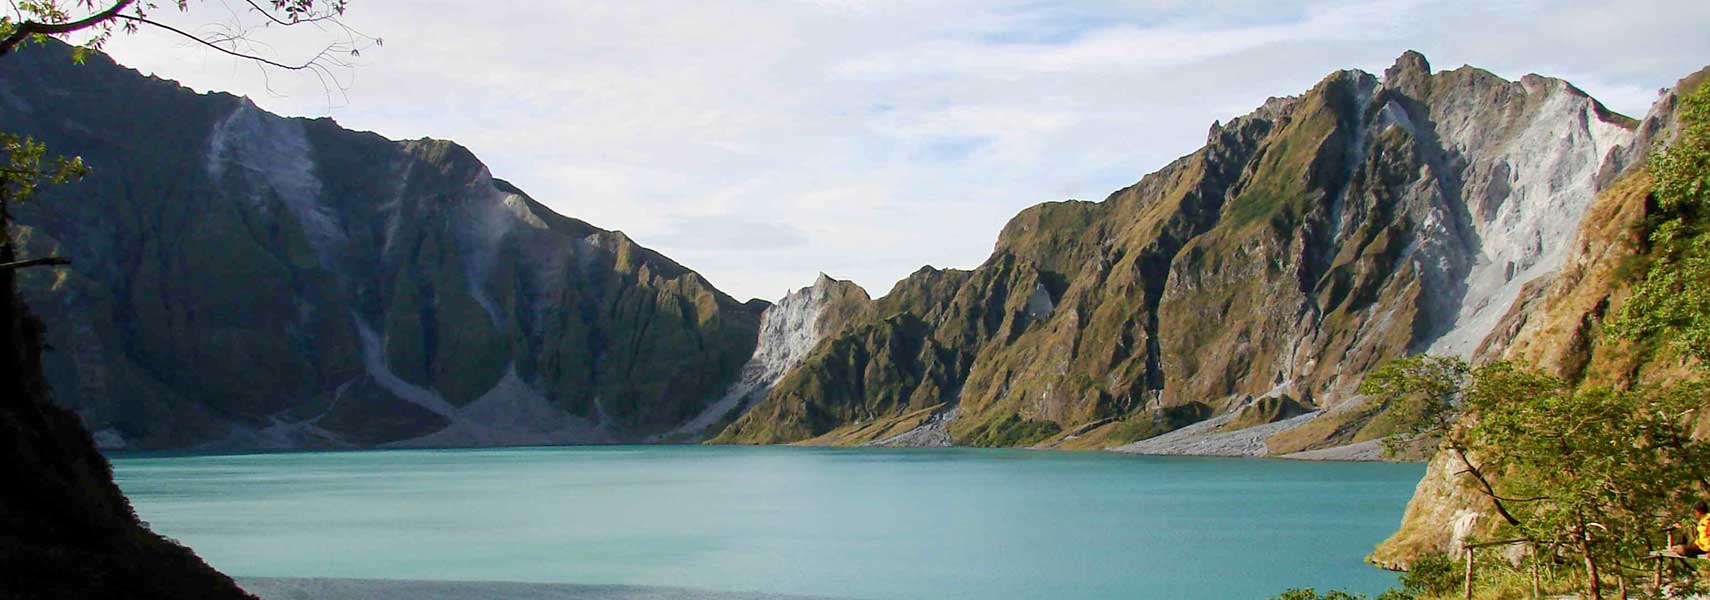 Mount Pinatubo, Cabusilan Mountains, Luzon